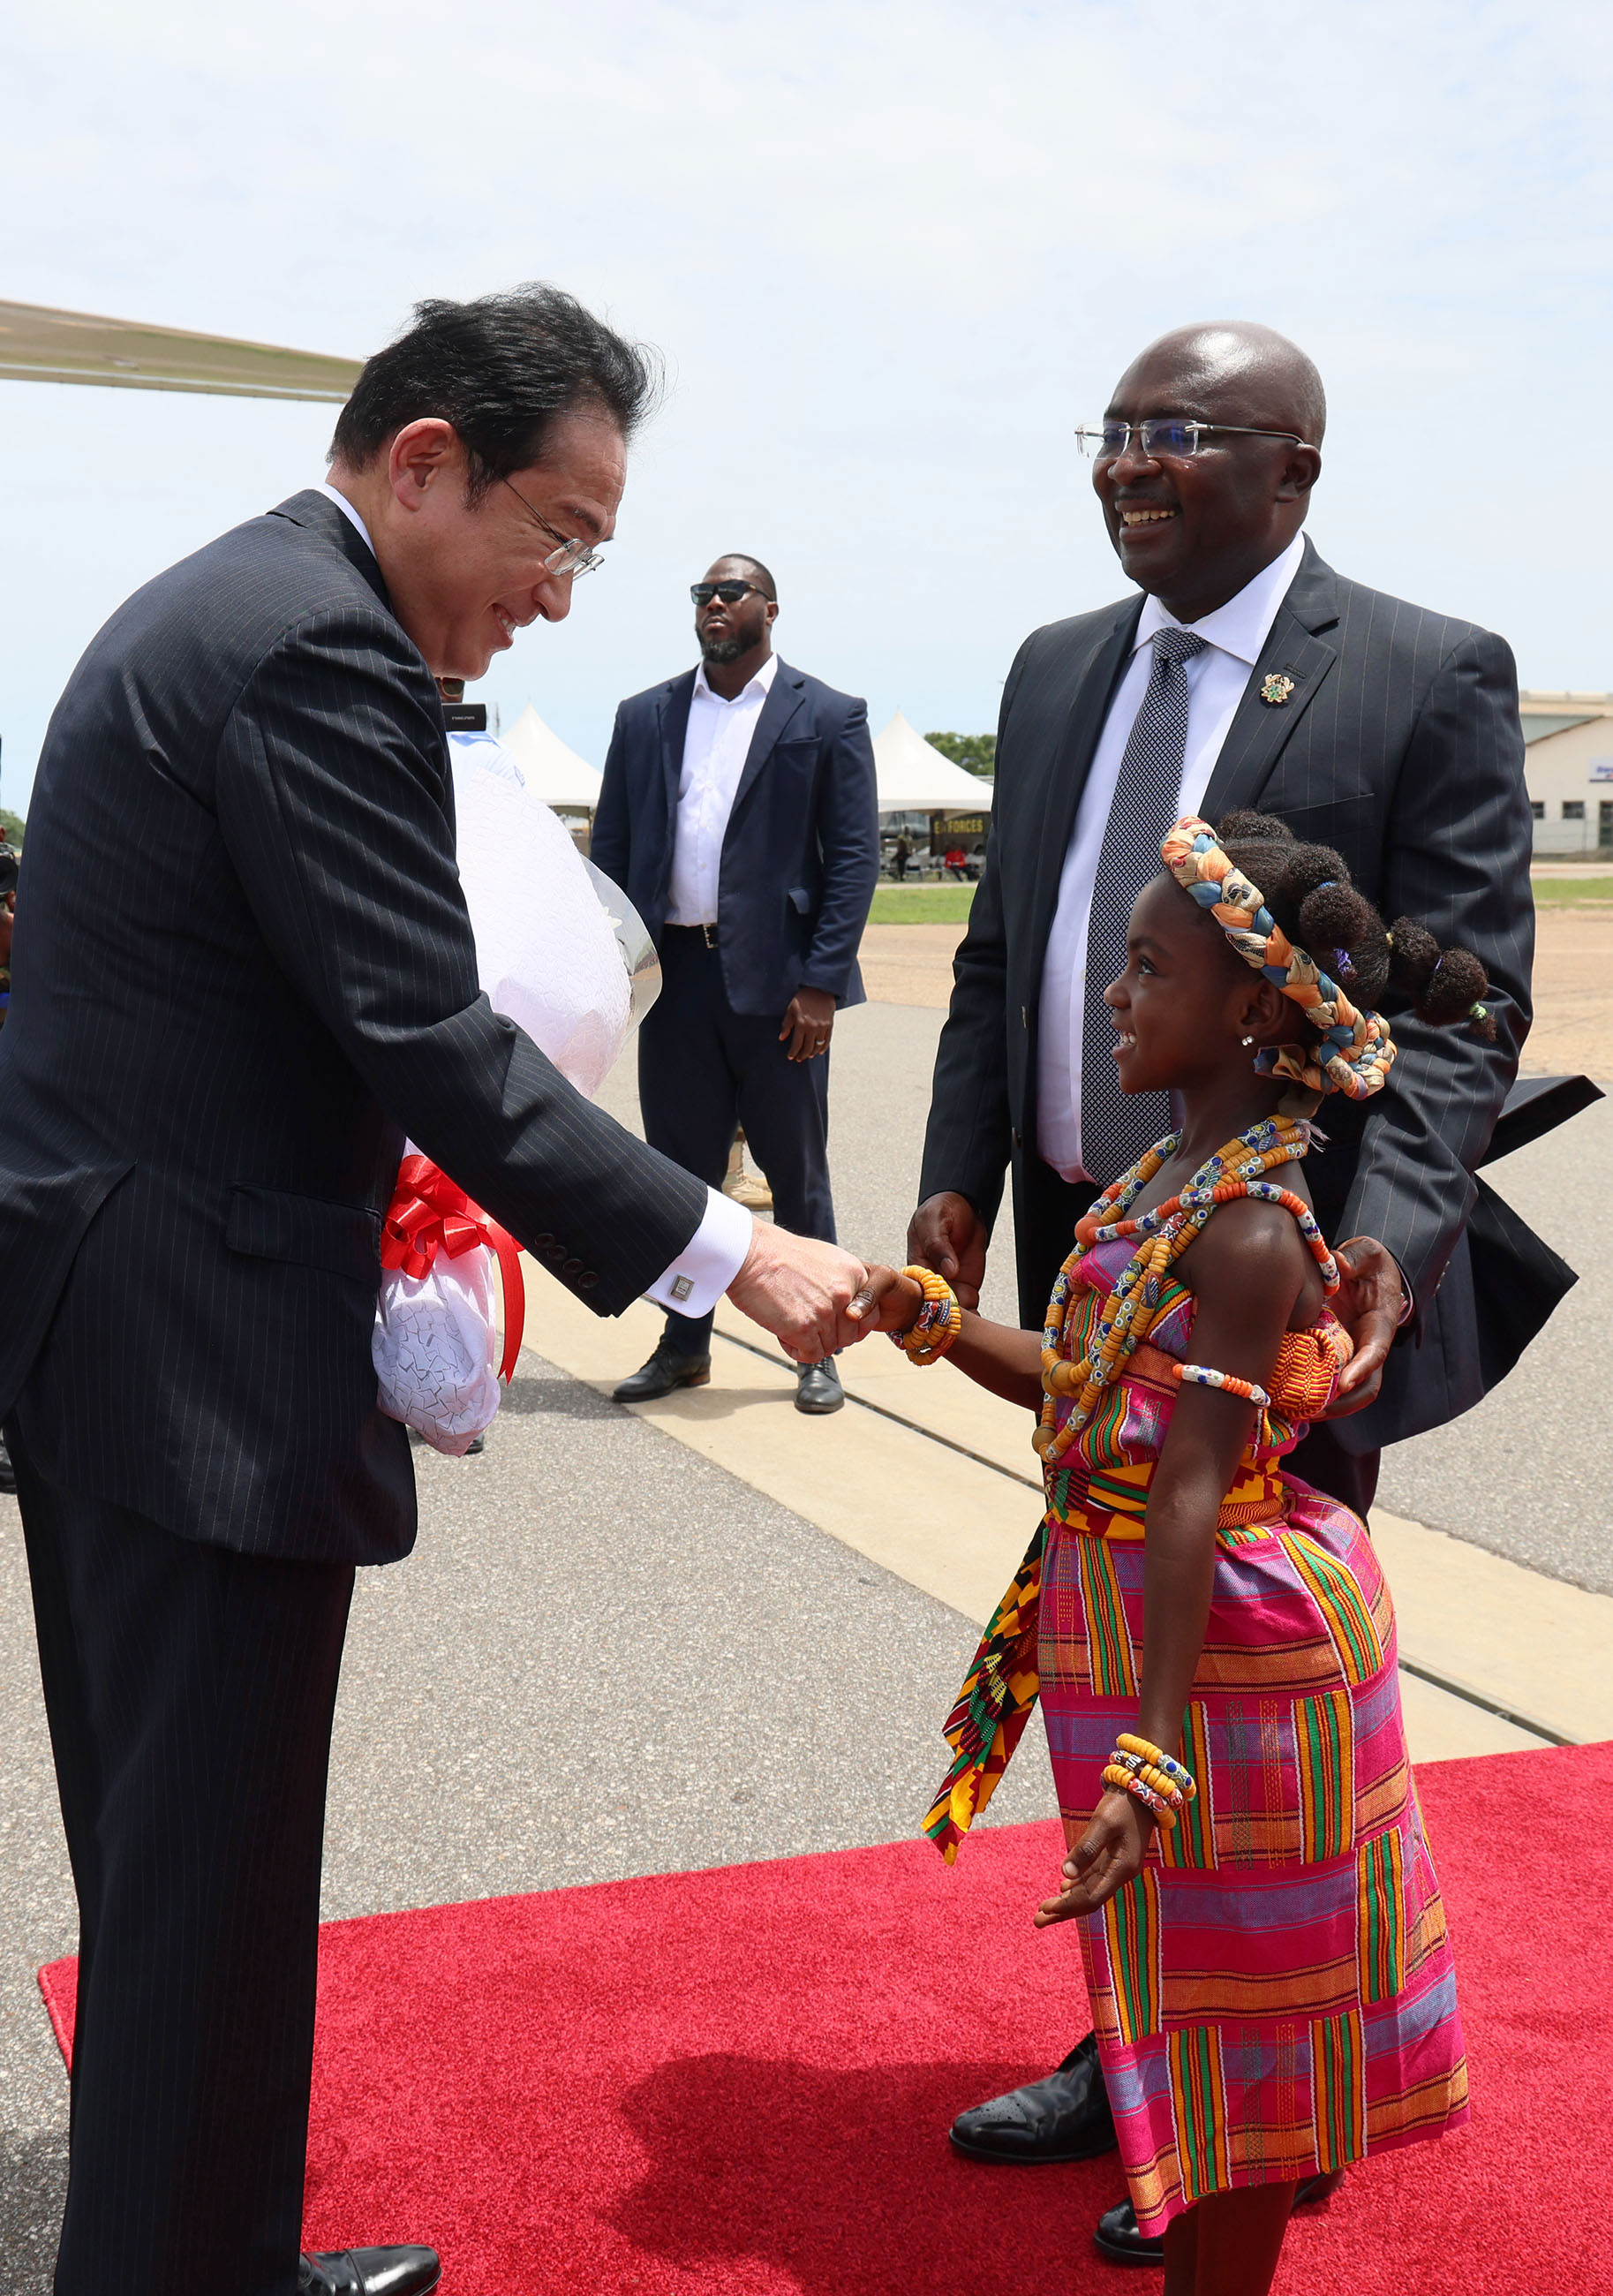 Prime Minister Kishida arriving in Ghana (1)